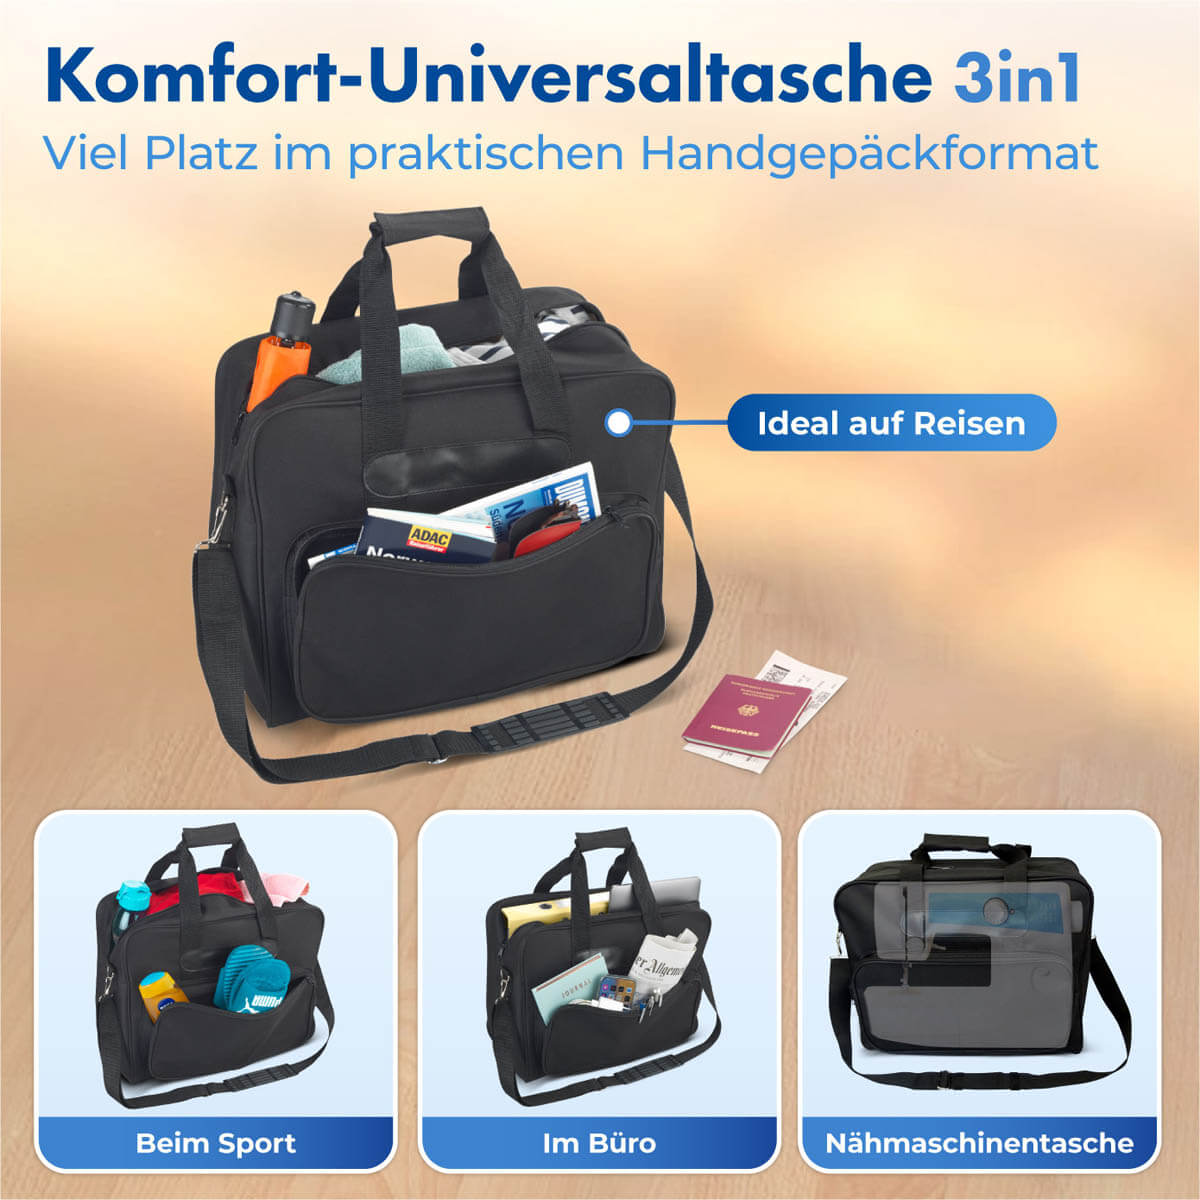 Komfort-Universaltasche 3in1, schwarz